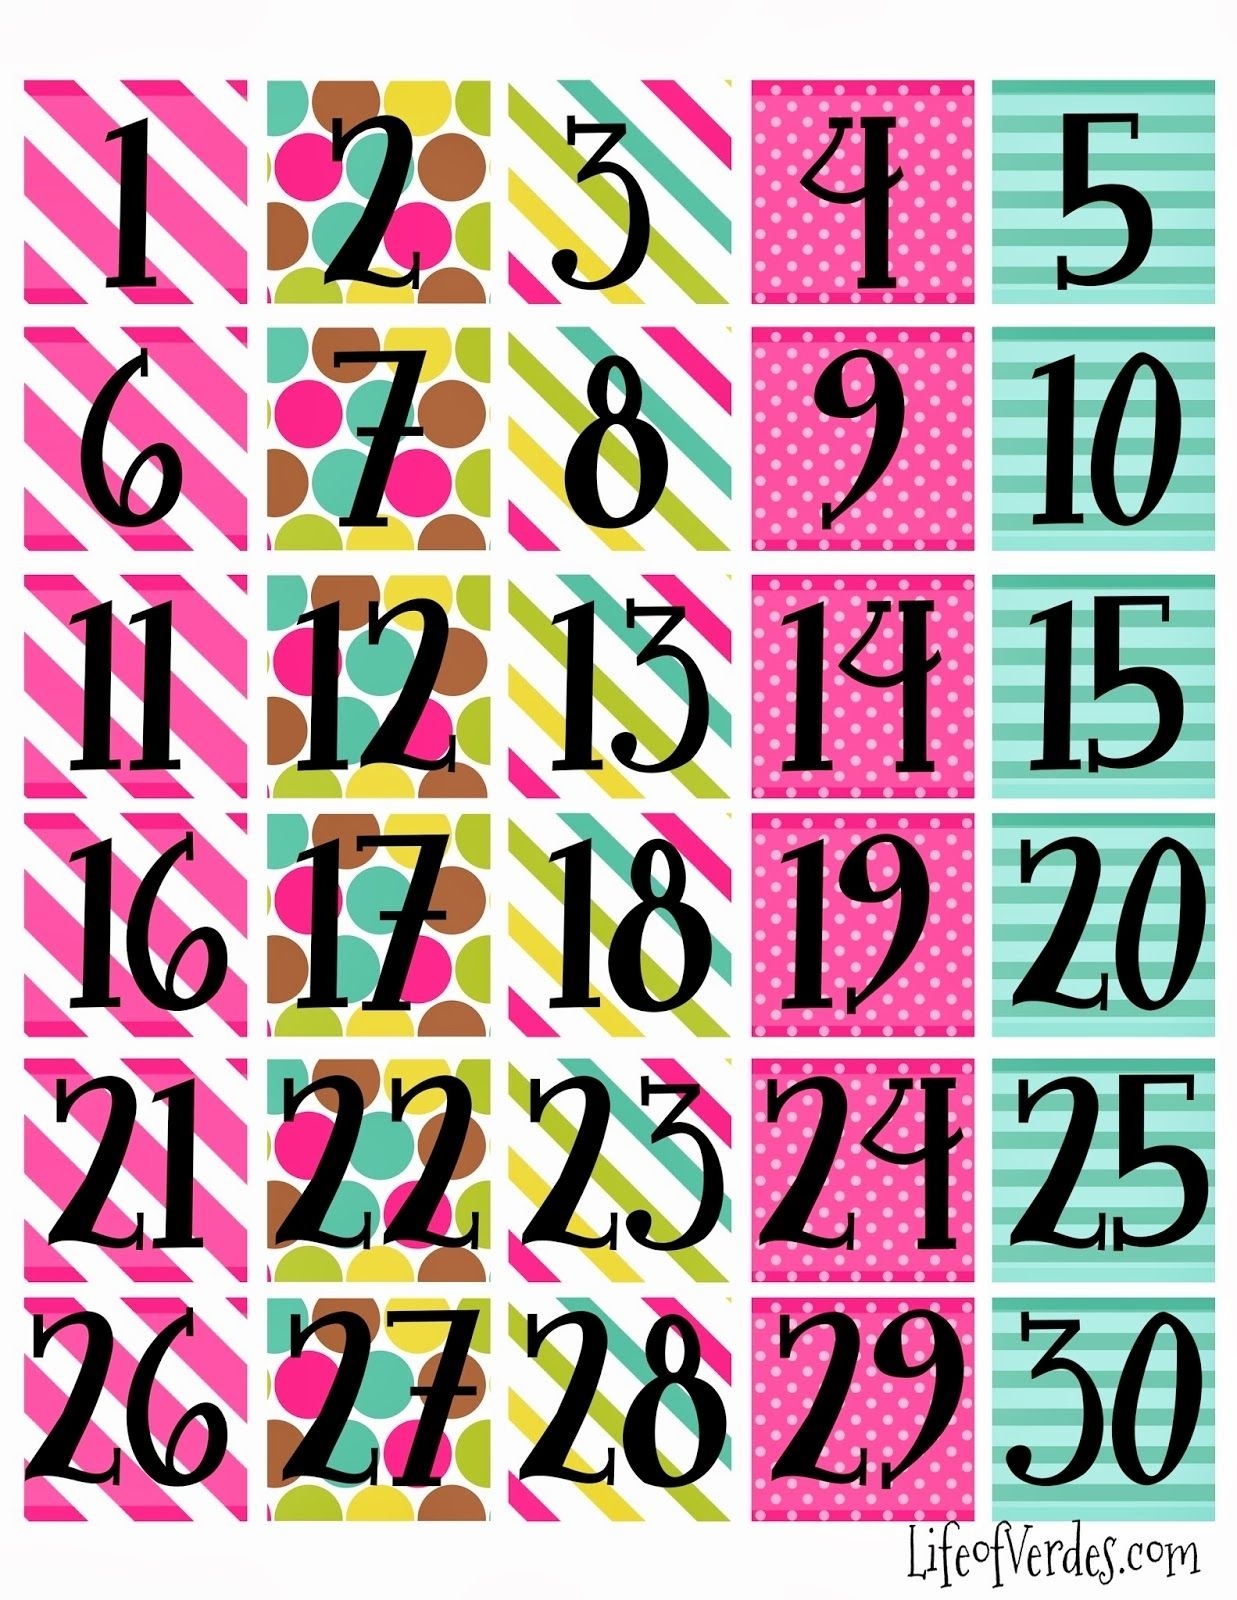 Hmrc Tax Week Calendar 2019 - Calendar Inspiration Design